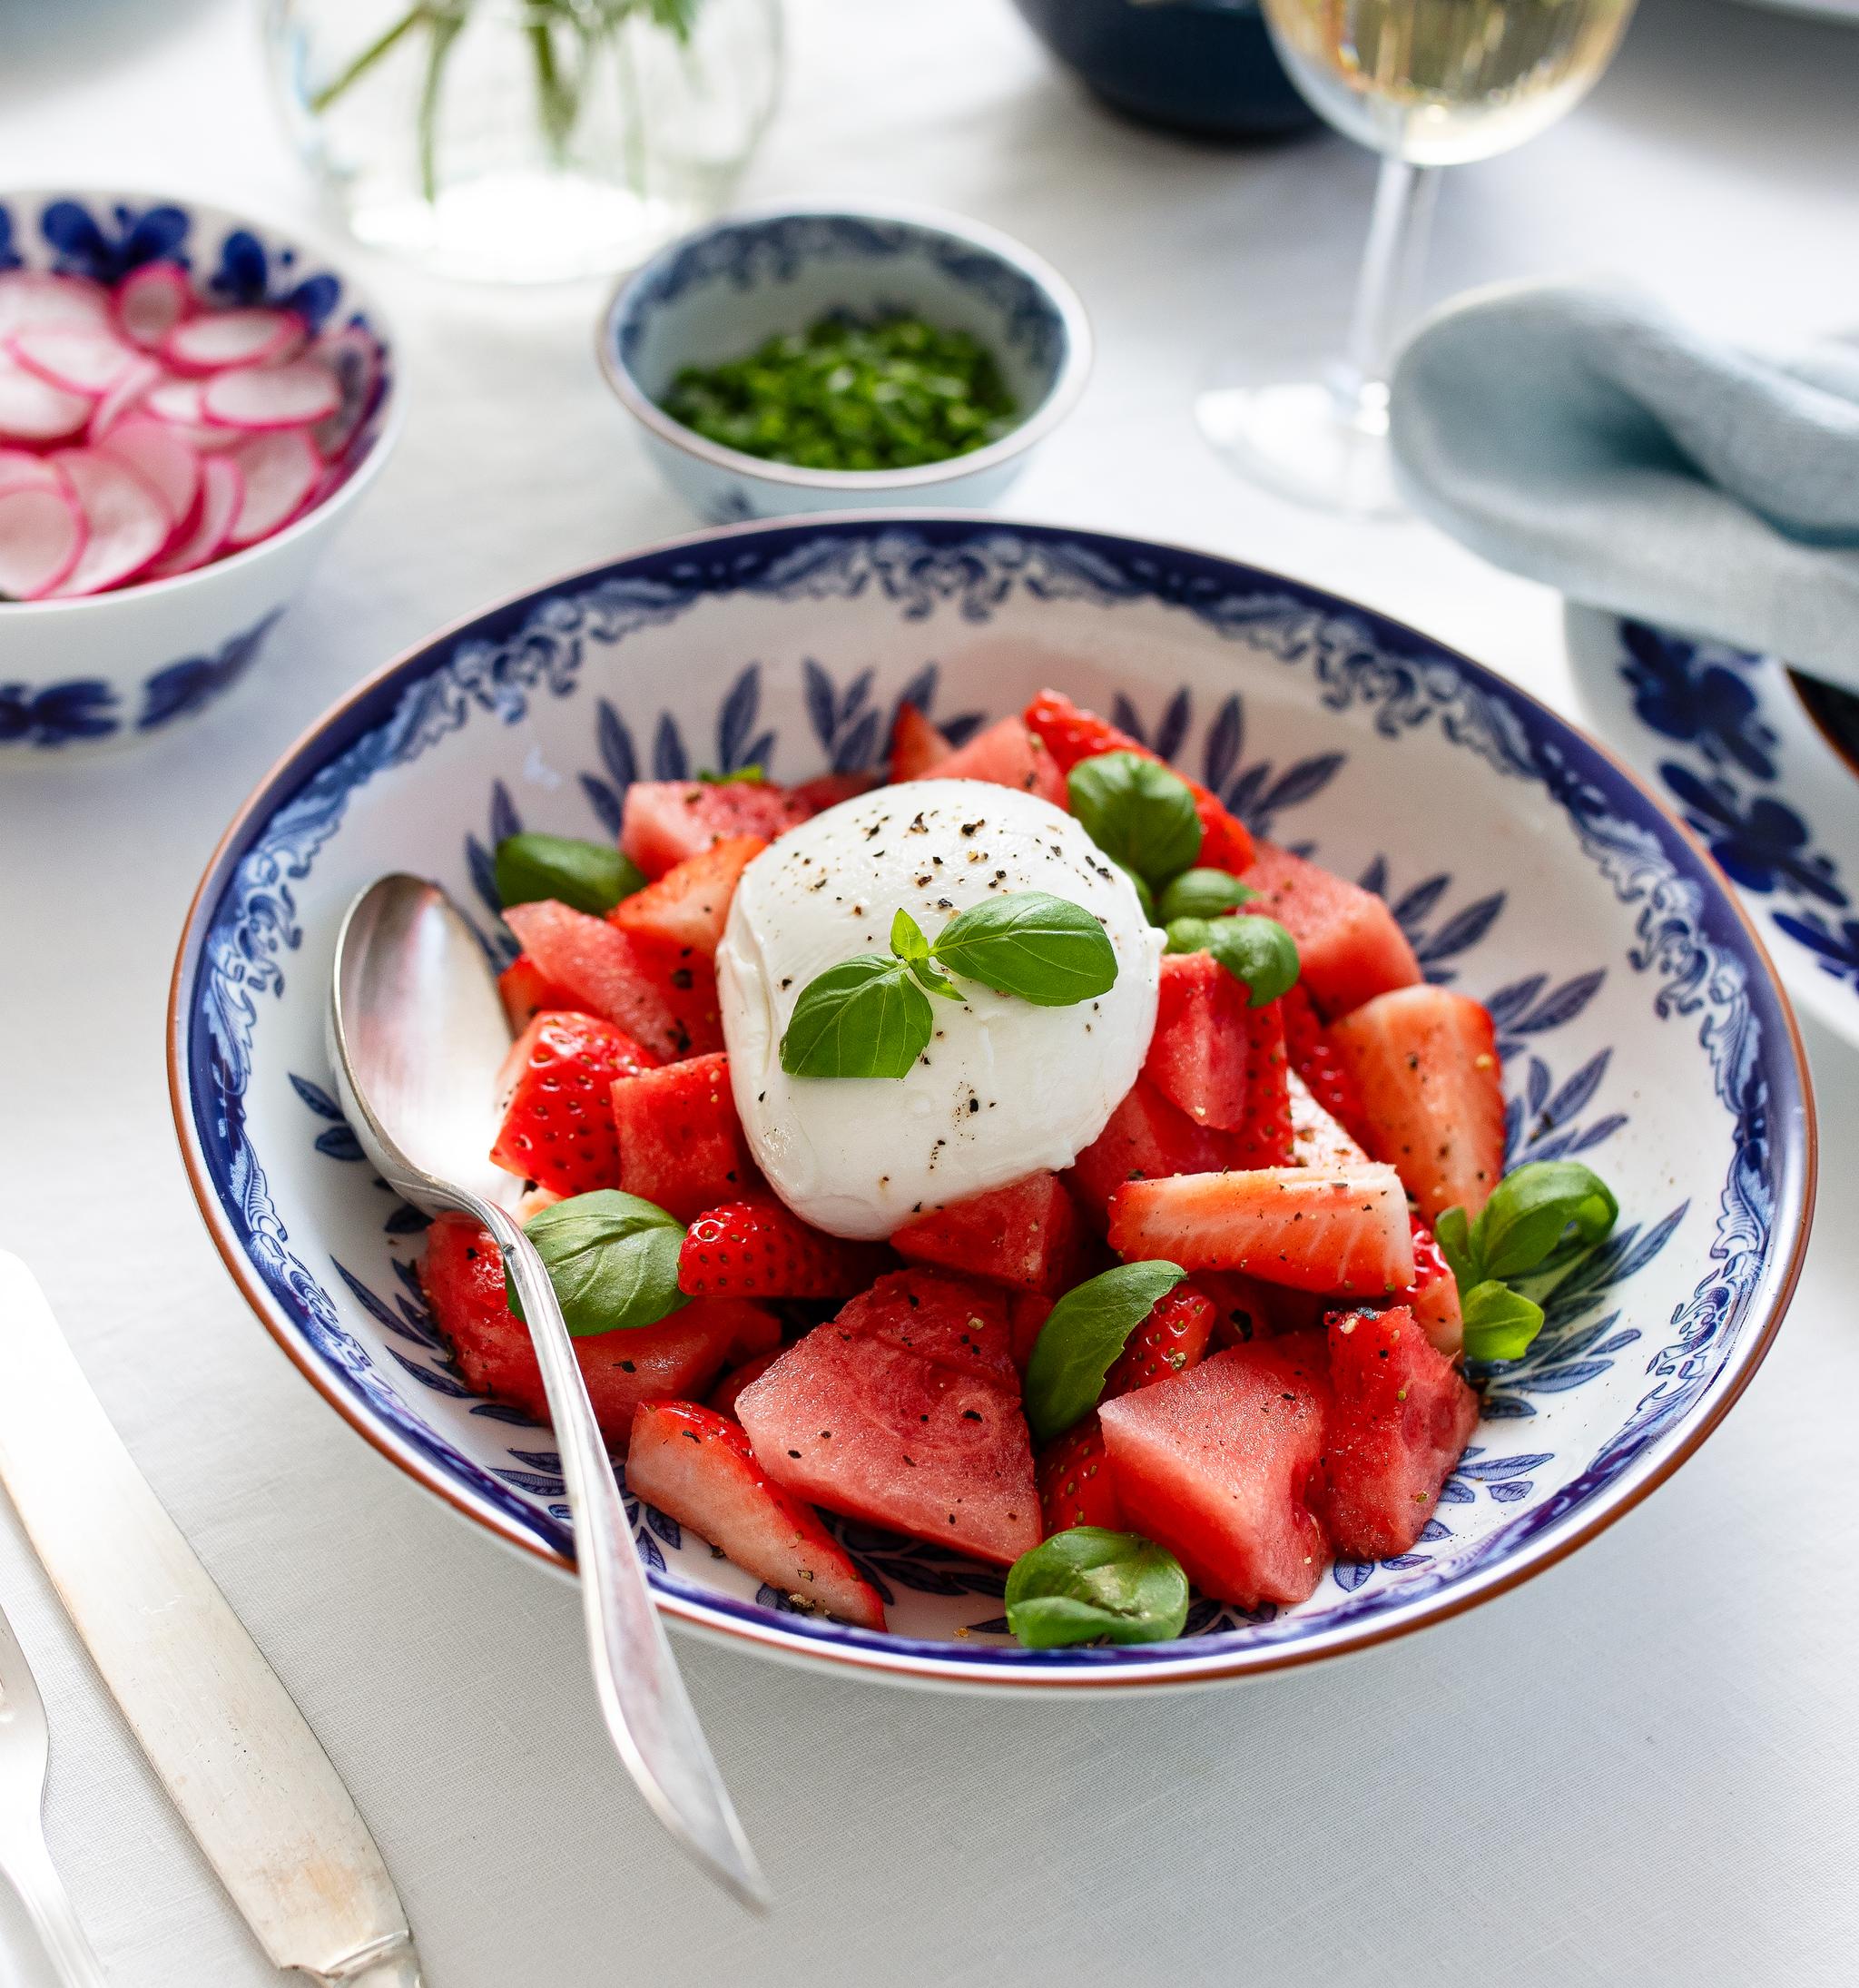 Juhannusruoat juhannus reseptit meloni ja mansikka salaatti rörstrand kulho sinivalkoinen